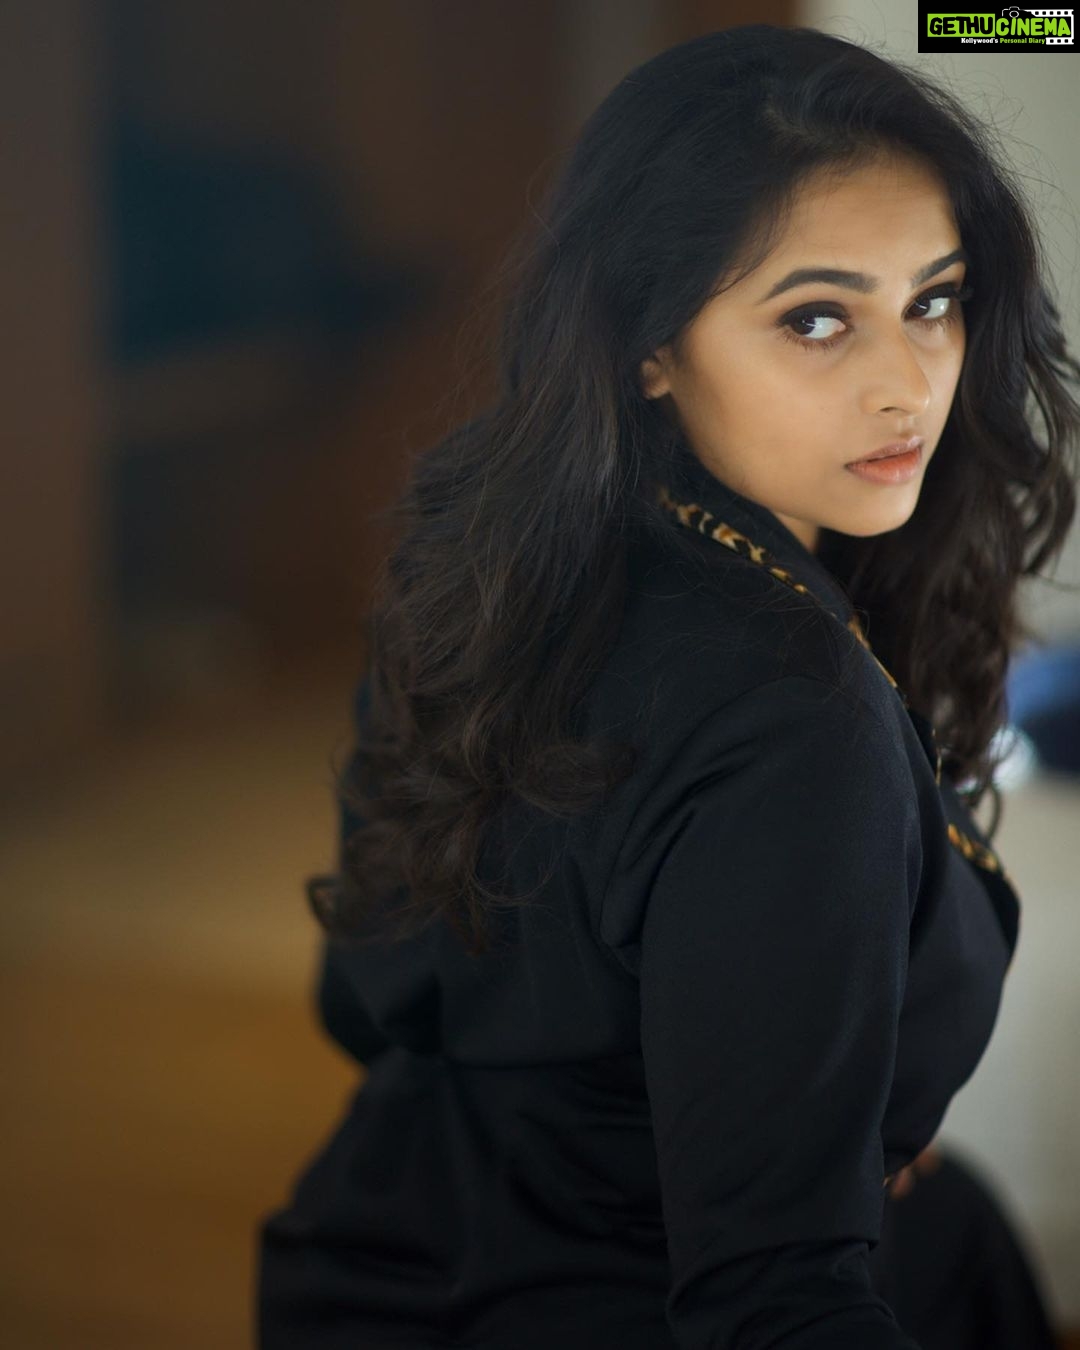 Sri Divya Tamil Actress Xnxx - Actress Sri Divya HD Photos and Wallpapers March 2020 - Gethu Cinema